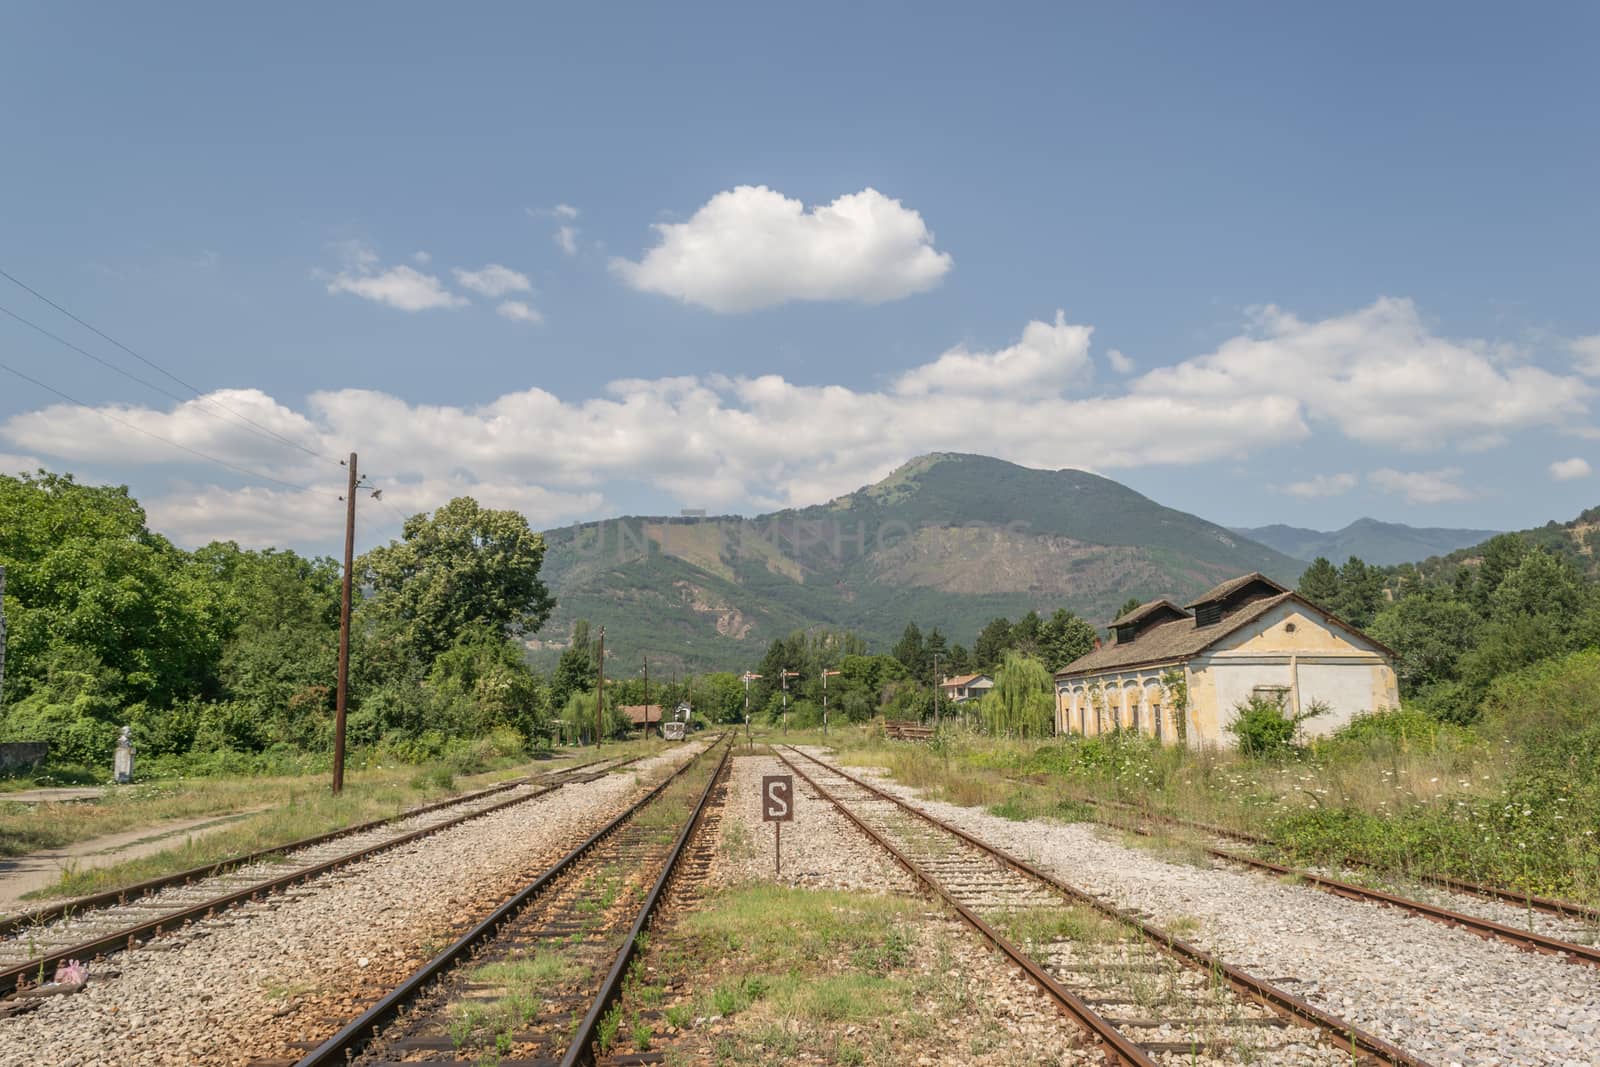 Railway in rural area